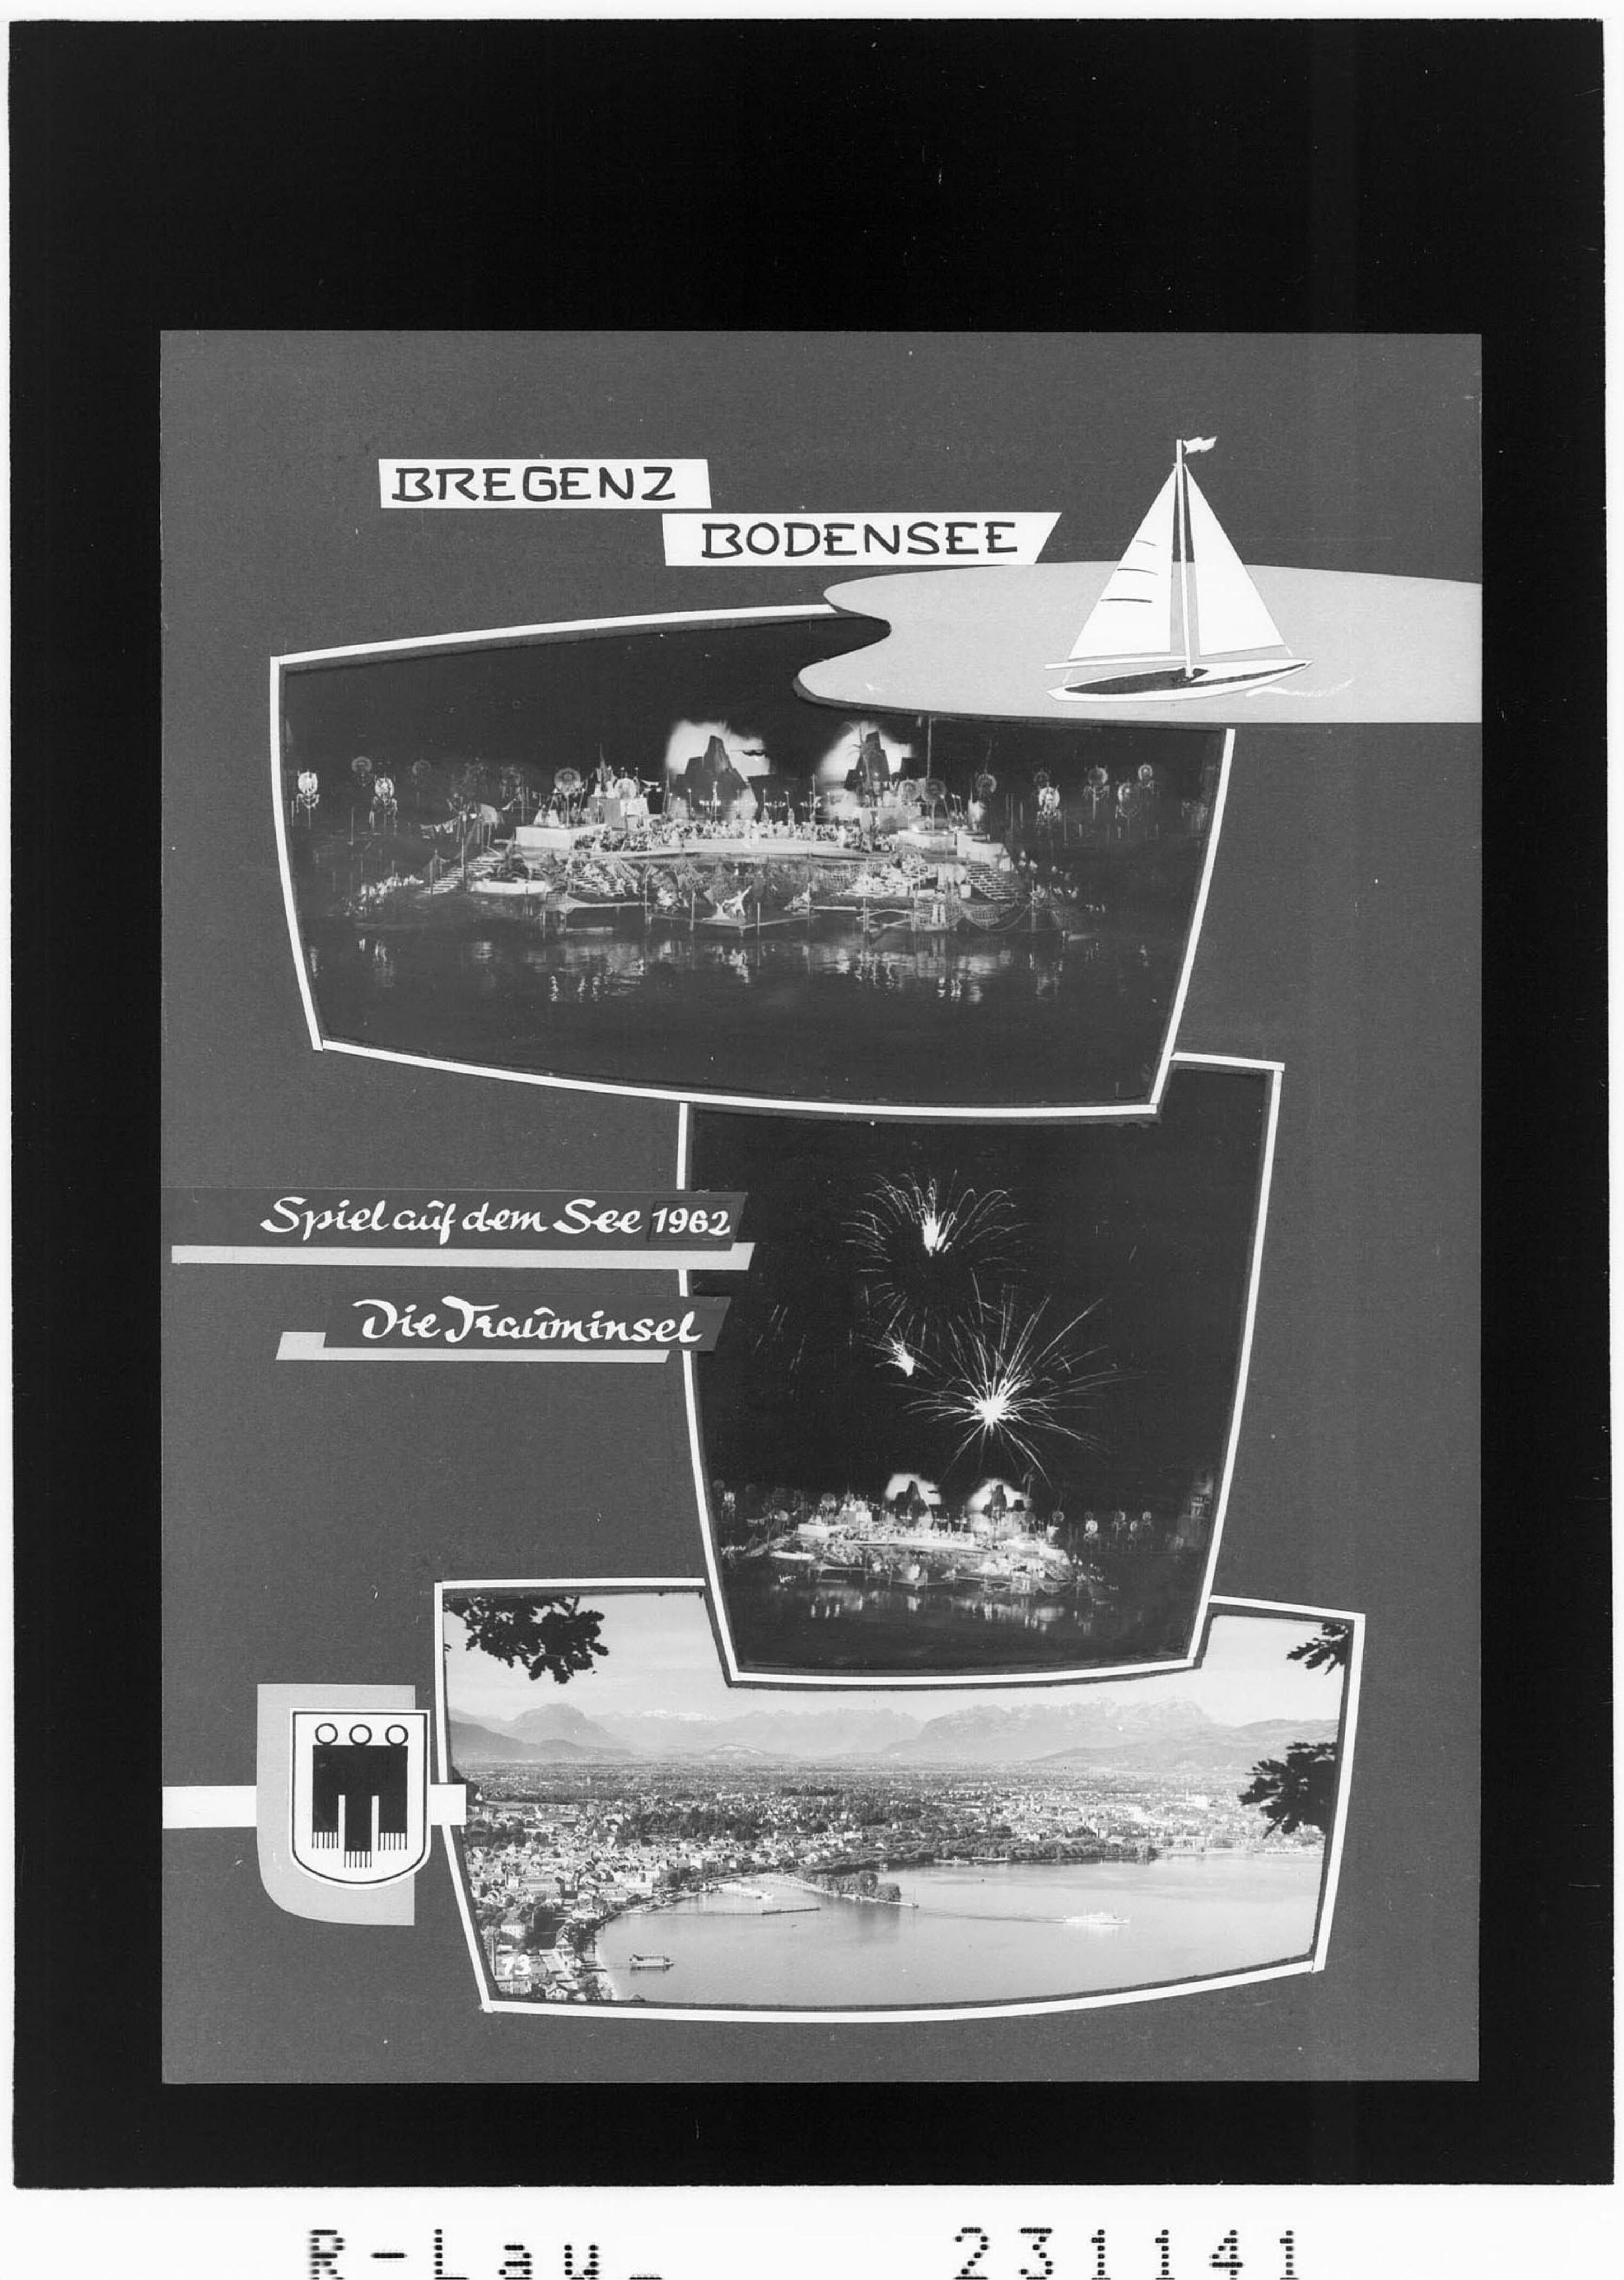 Bregenz Bodensee / Spiel auf dem See 1962 - Die Trauminsel></div>


    <hr>
    <div class=